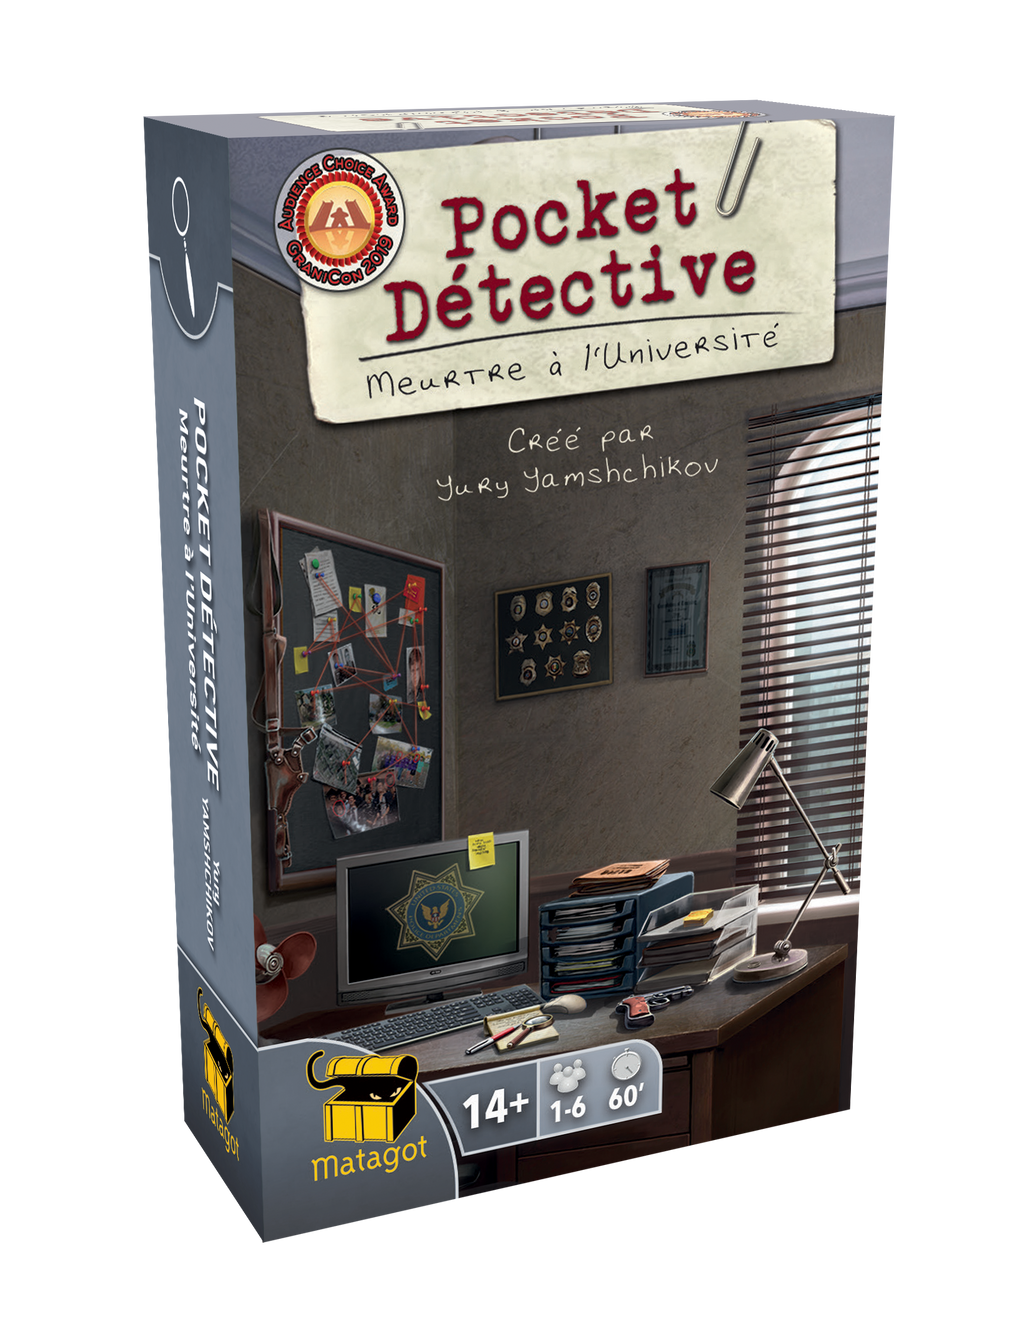 Pocket Detective Meurtre à l'Université